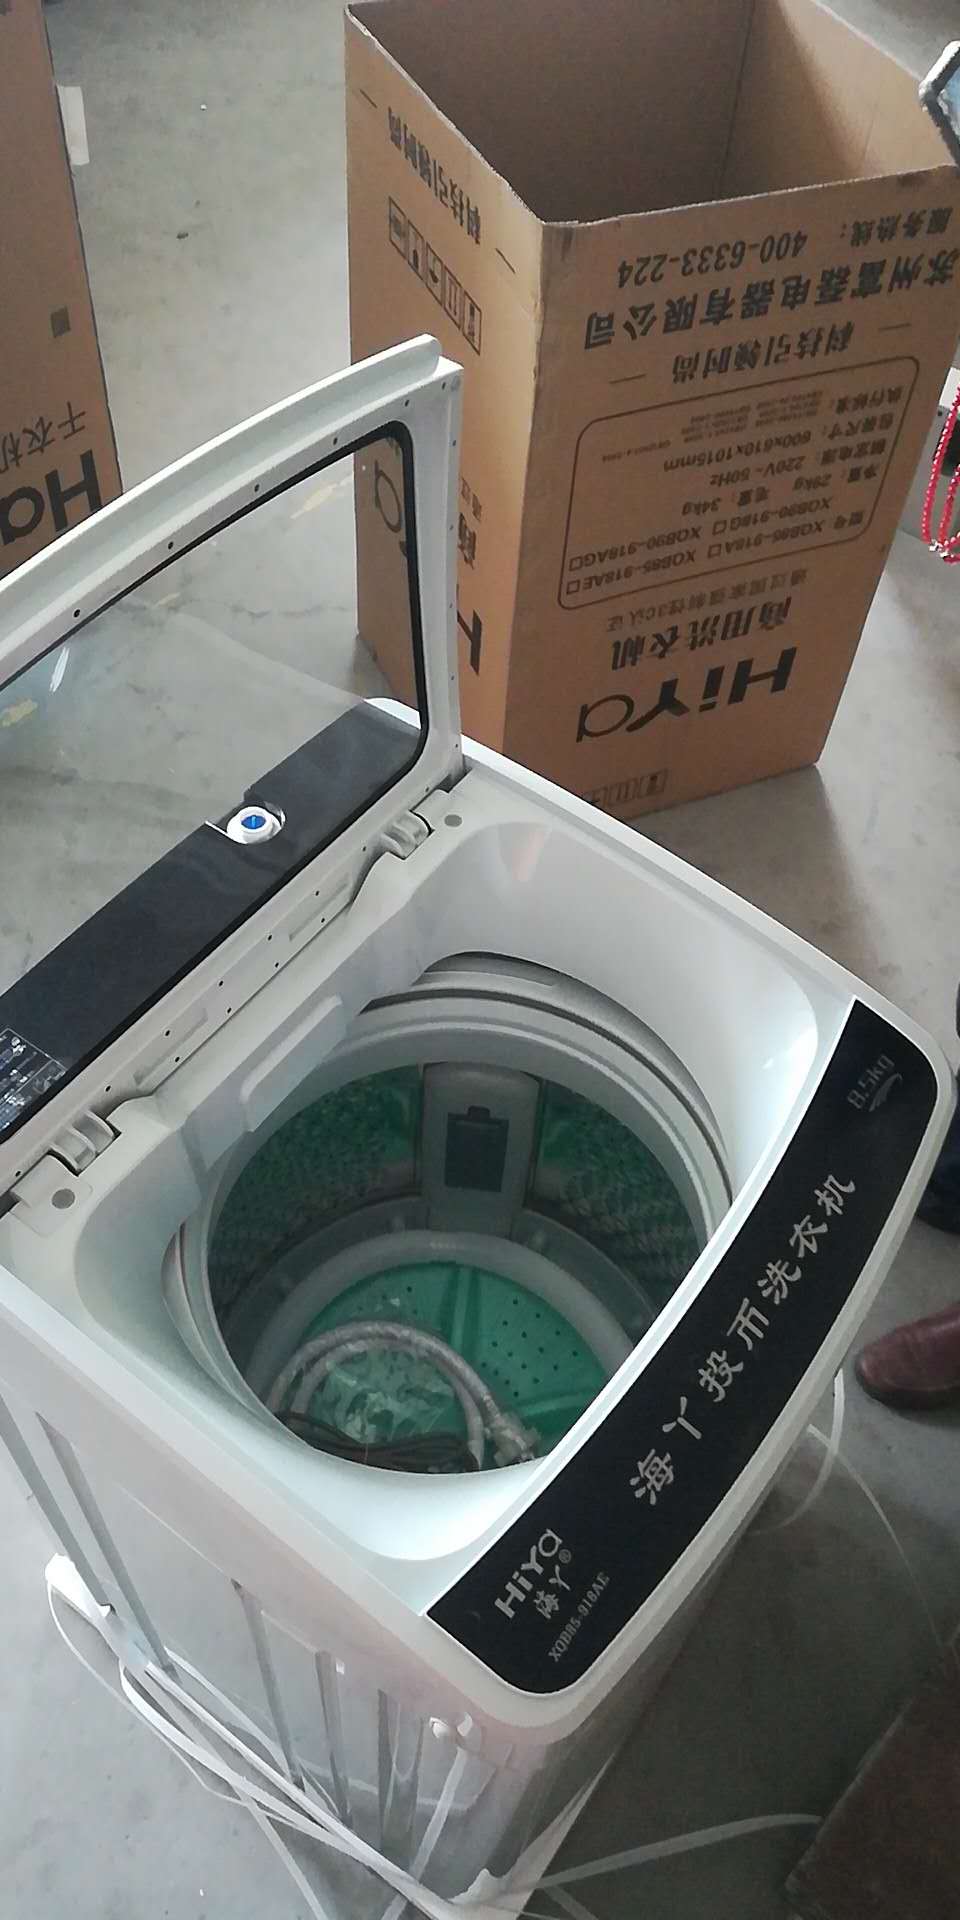 供应8.5公斤洗被机 大容量投币洗衣机洗被机 扫码支付洗衣机 社区投放洗衣机图片